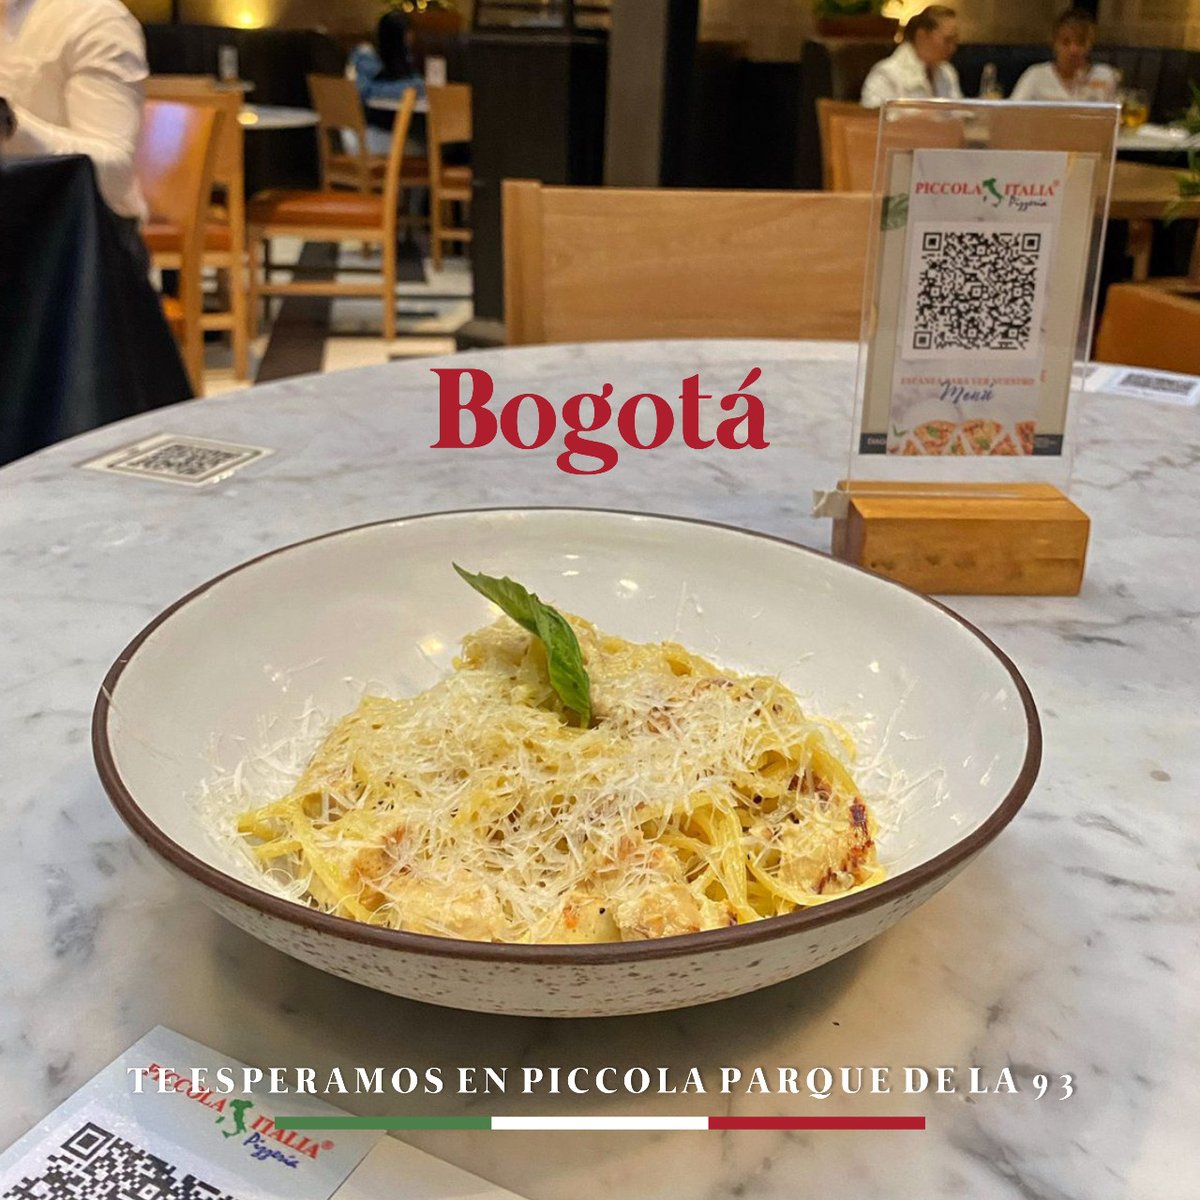 Termina este lunes con nuestra deliciosa pasta en Piccola Italia.